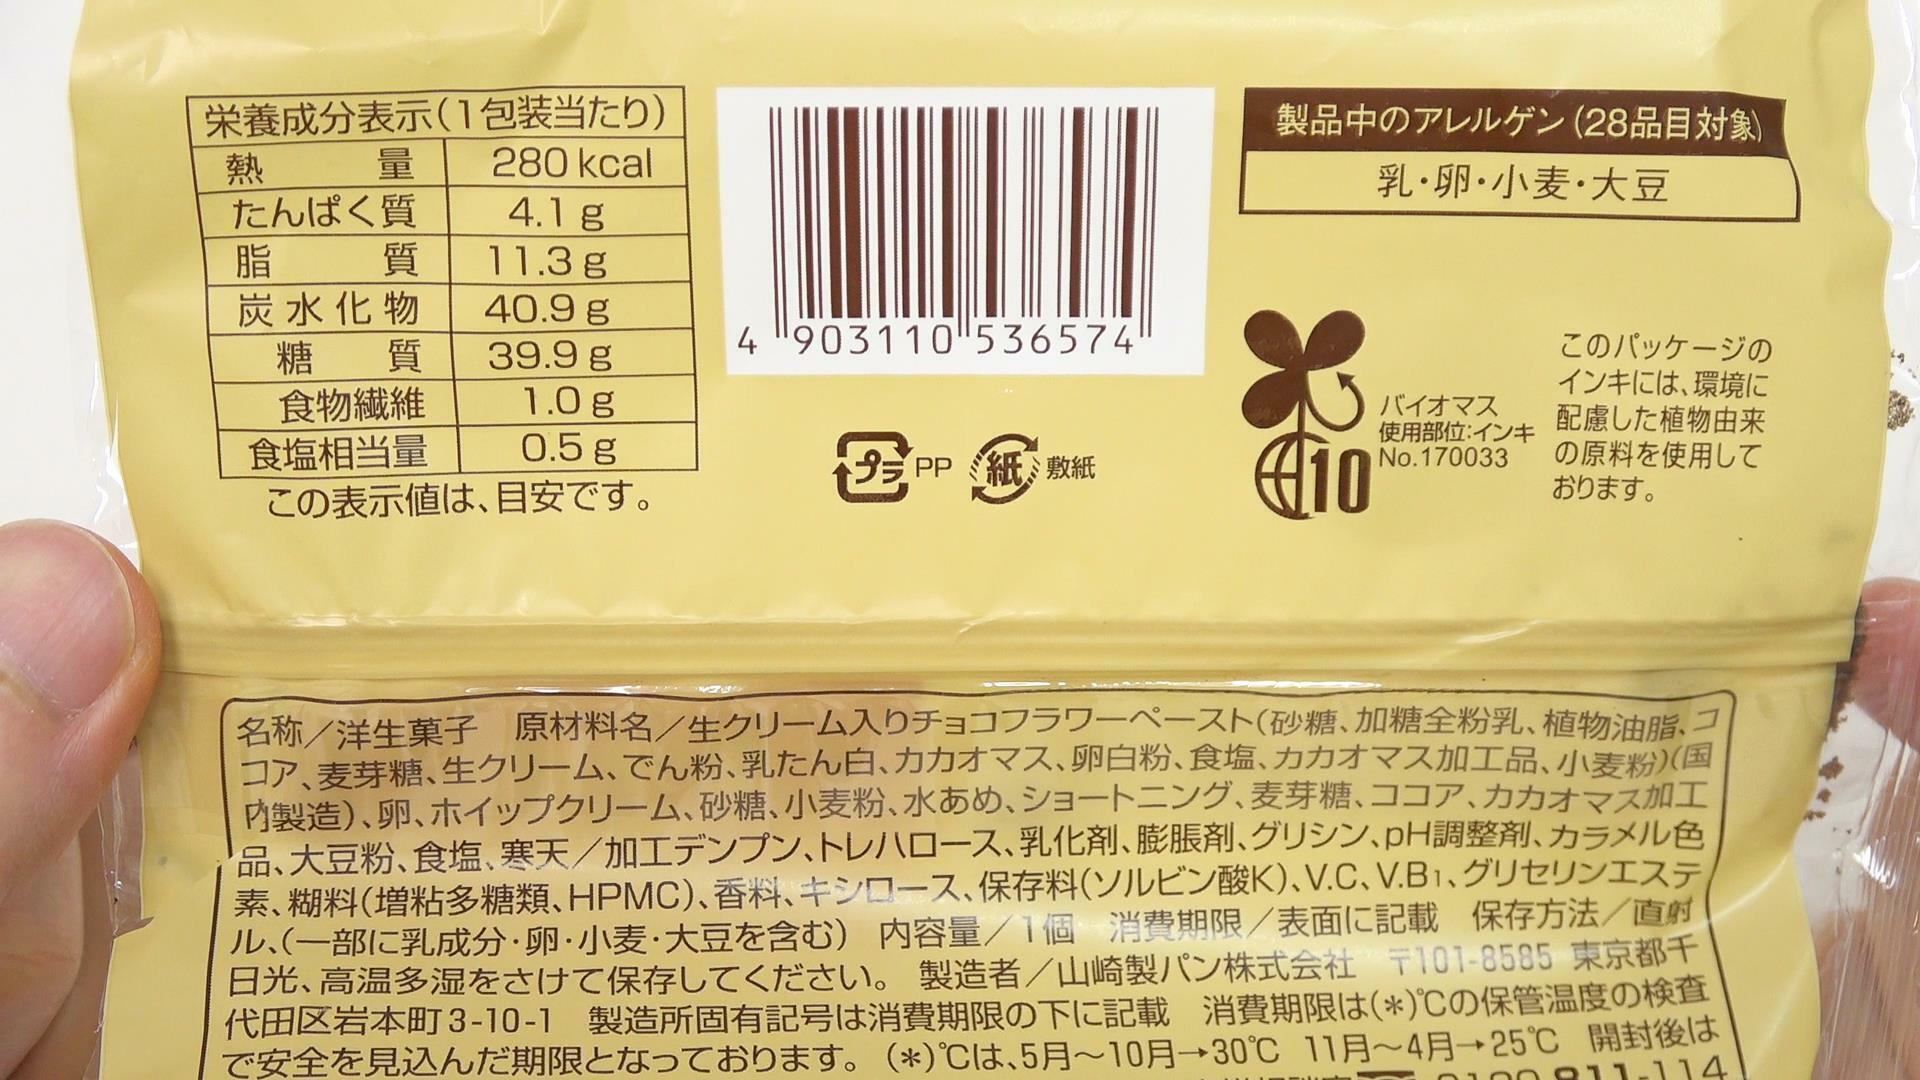 ファミマ新商品の生チョコロールケーキの原材料名と栄養成分表示